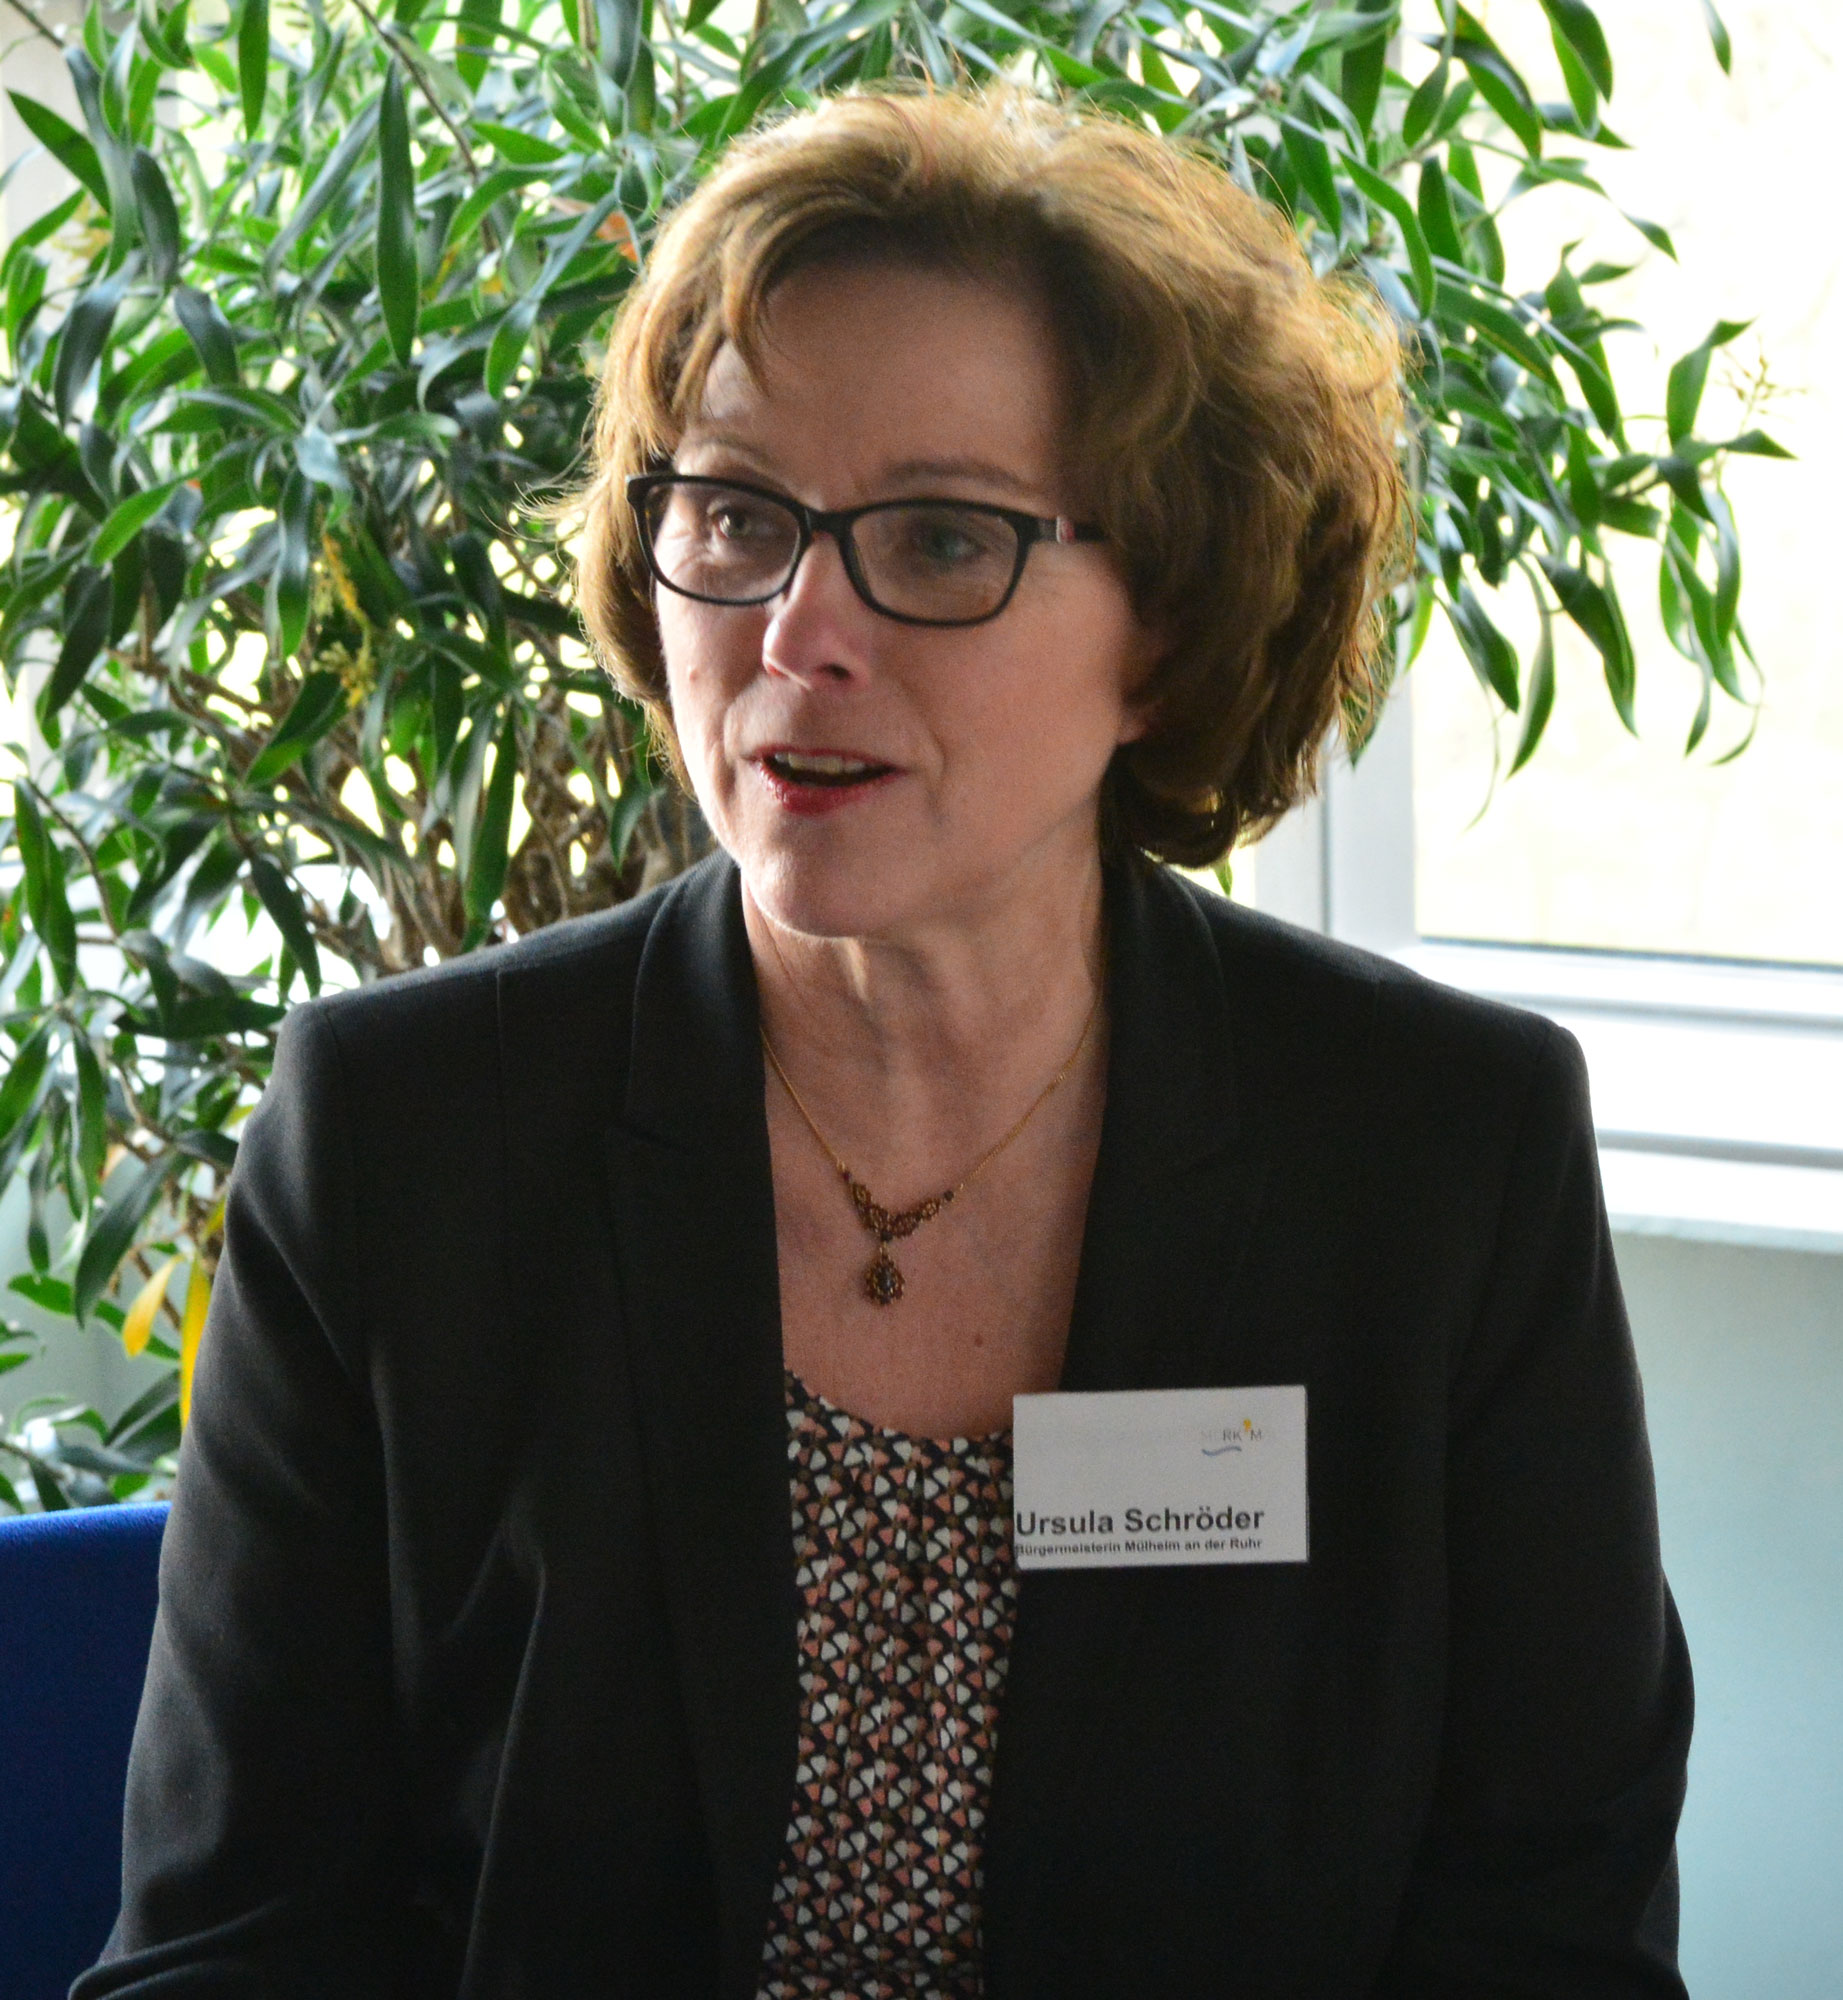   Bürgermeisterin Ursula Schröder lobte das Engagement der Mülheimerinnen und Mülheimer: „Die Übernahme von Verantwortung zeigt nachhaltig Wirkung.“  